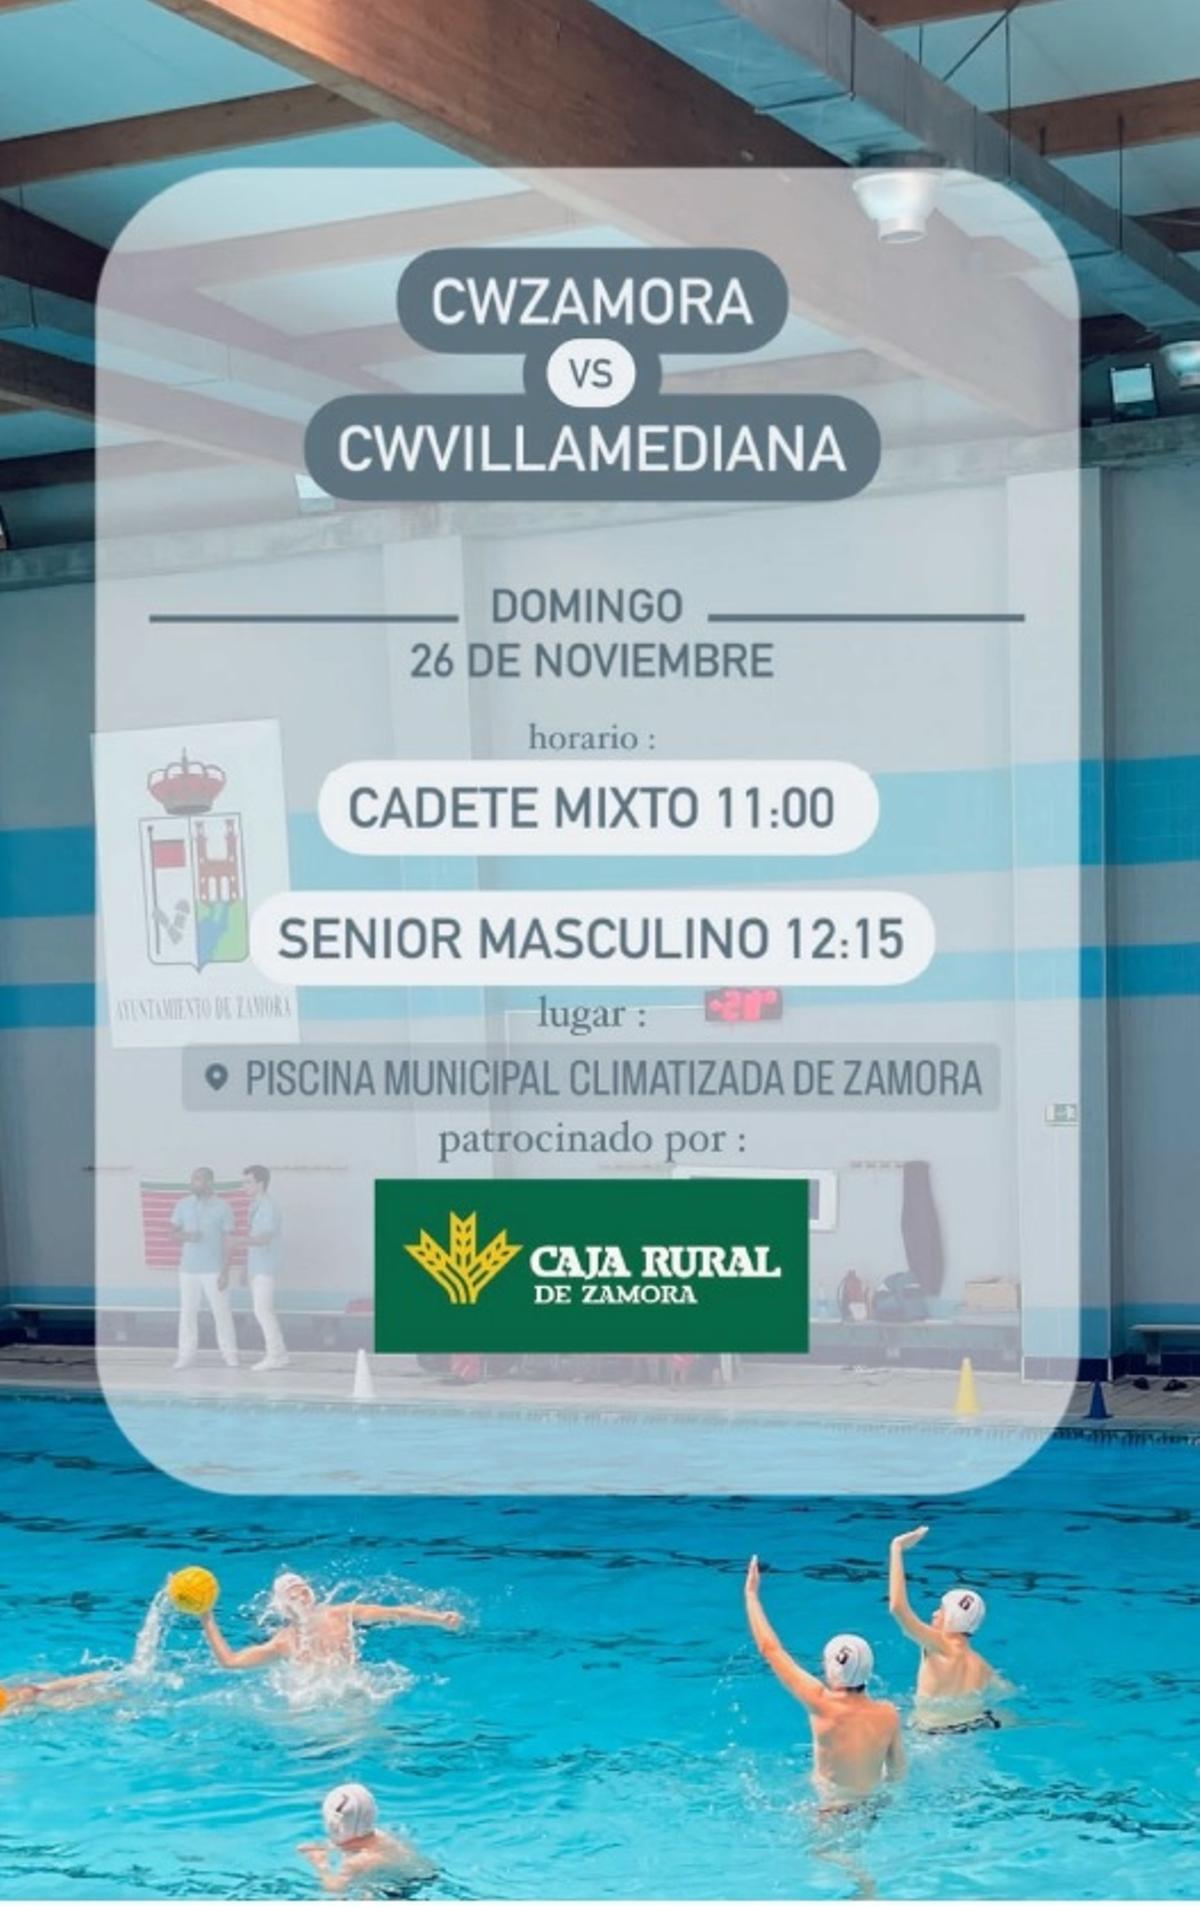 Cartel anunciador de la cita deportiva del Waterpolo Zamora